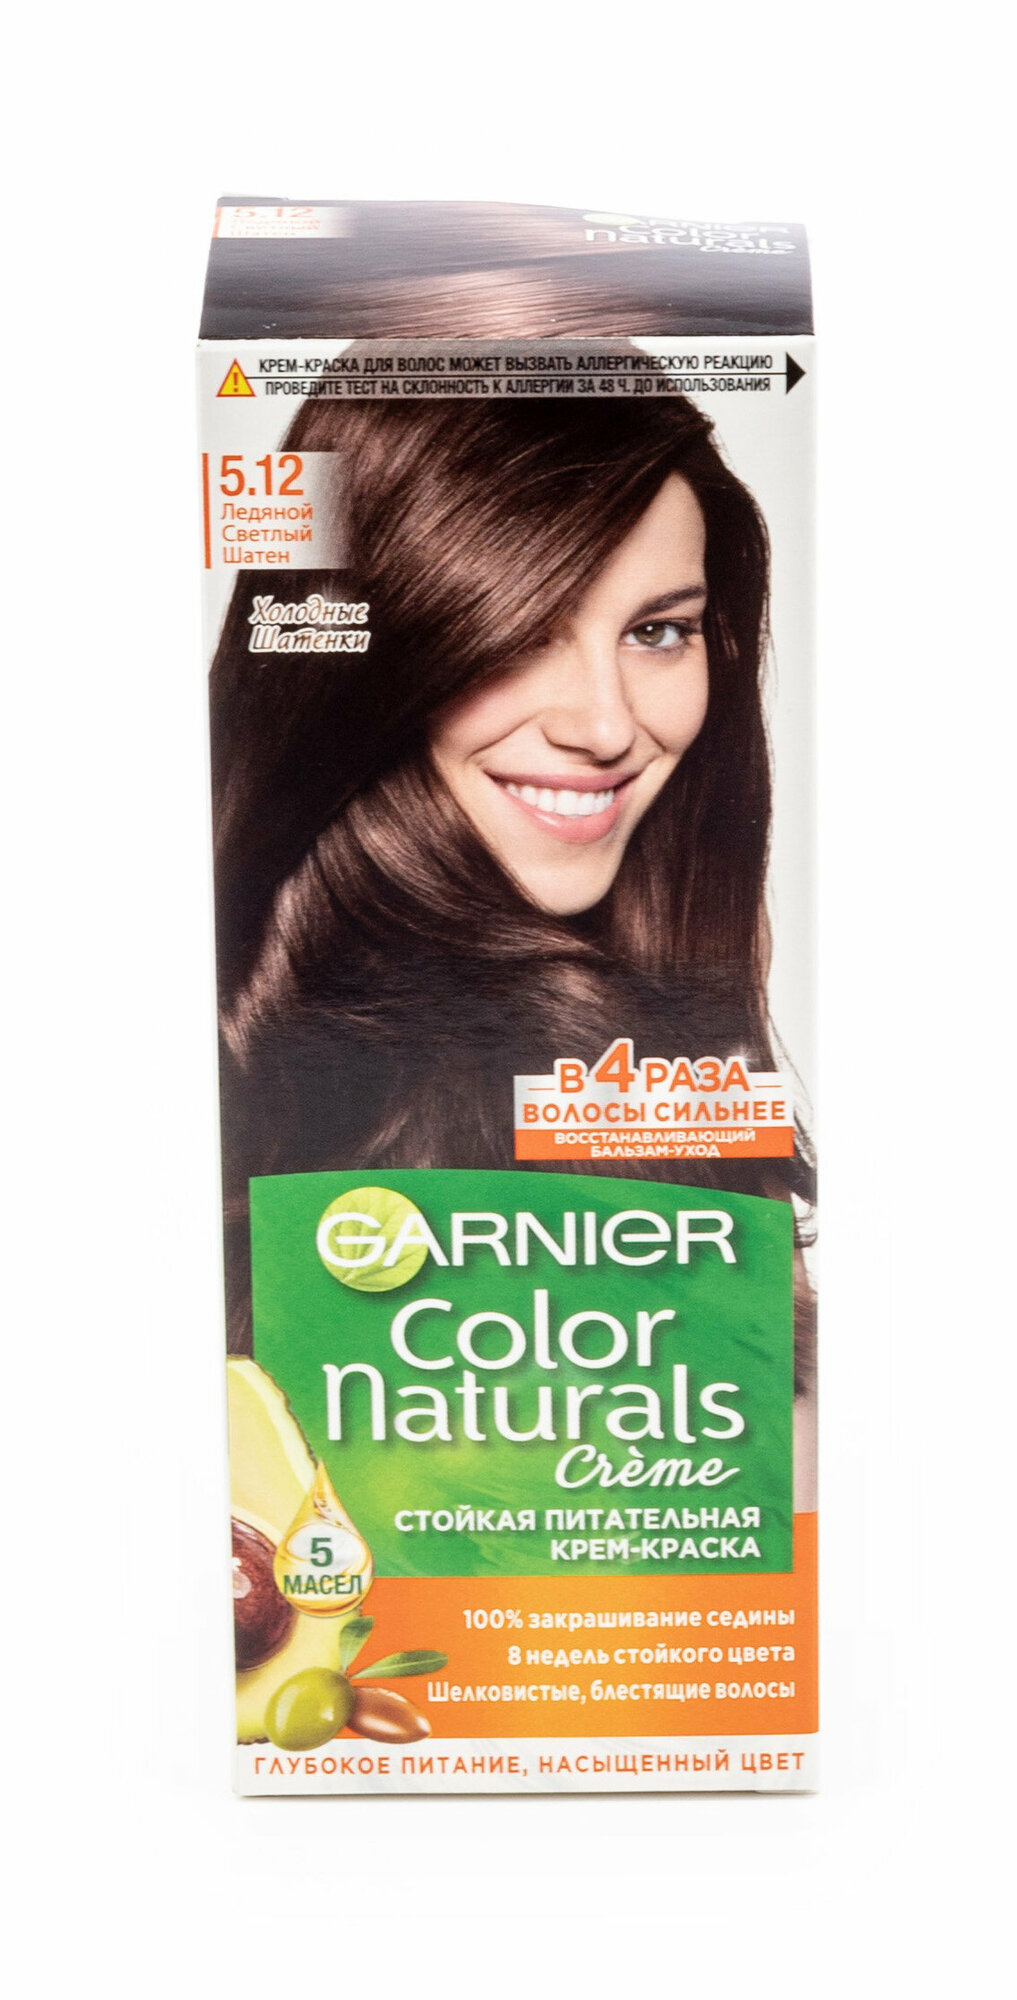 Крем-краска для волос Garnier Color Naturals 5.12 Ледяной Светлый Шатен ЛОРЕАЛЬ - фото №1